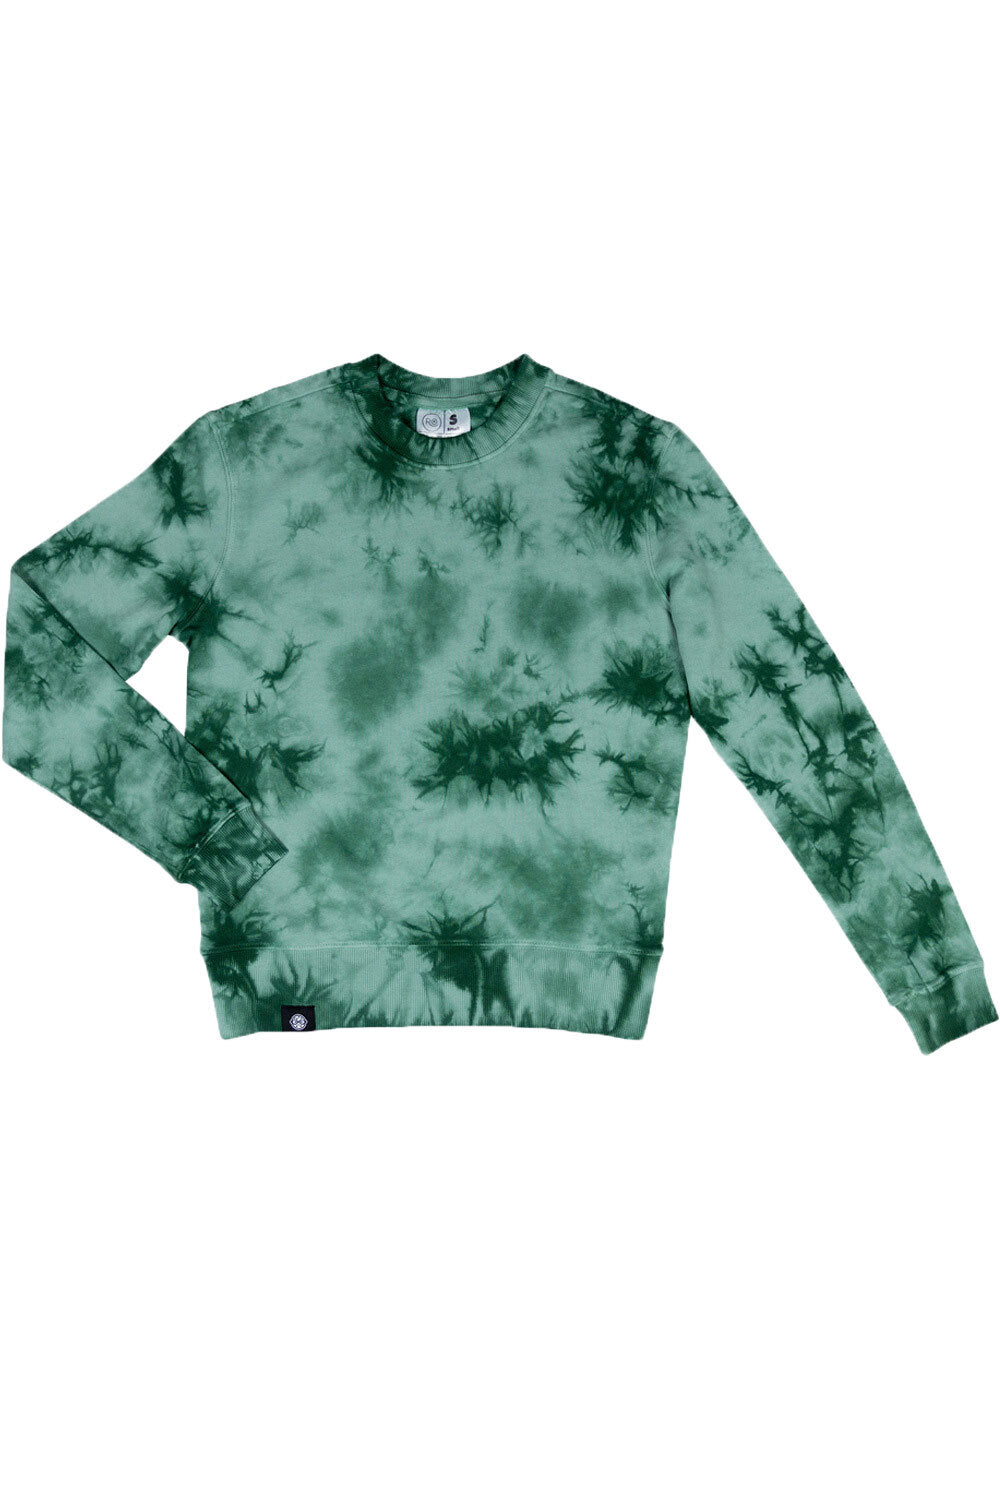 Evergreen Tie Dye Sweatshirt | Official Rosanna Pansino Merch